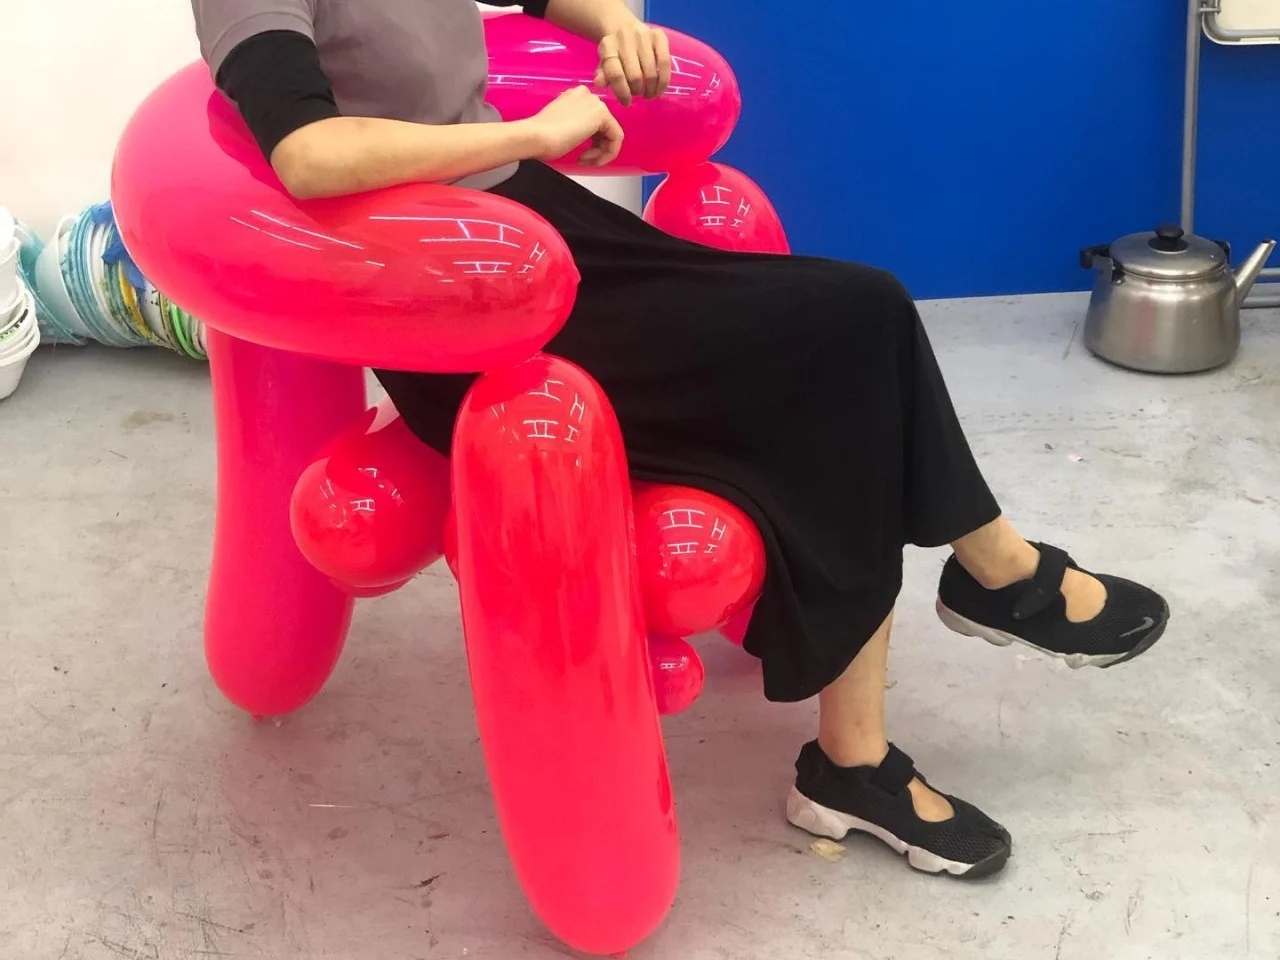 脑洞设计师用真气球制成了一系列椅子